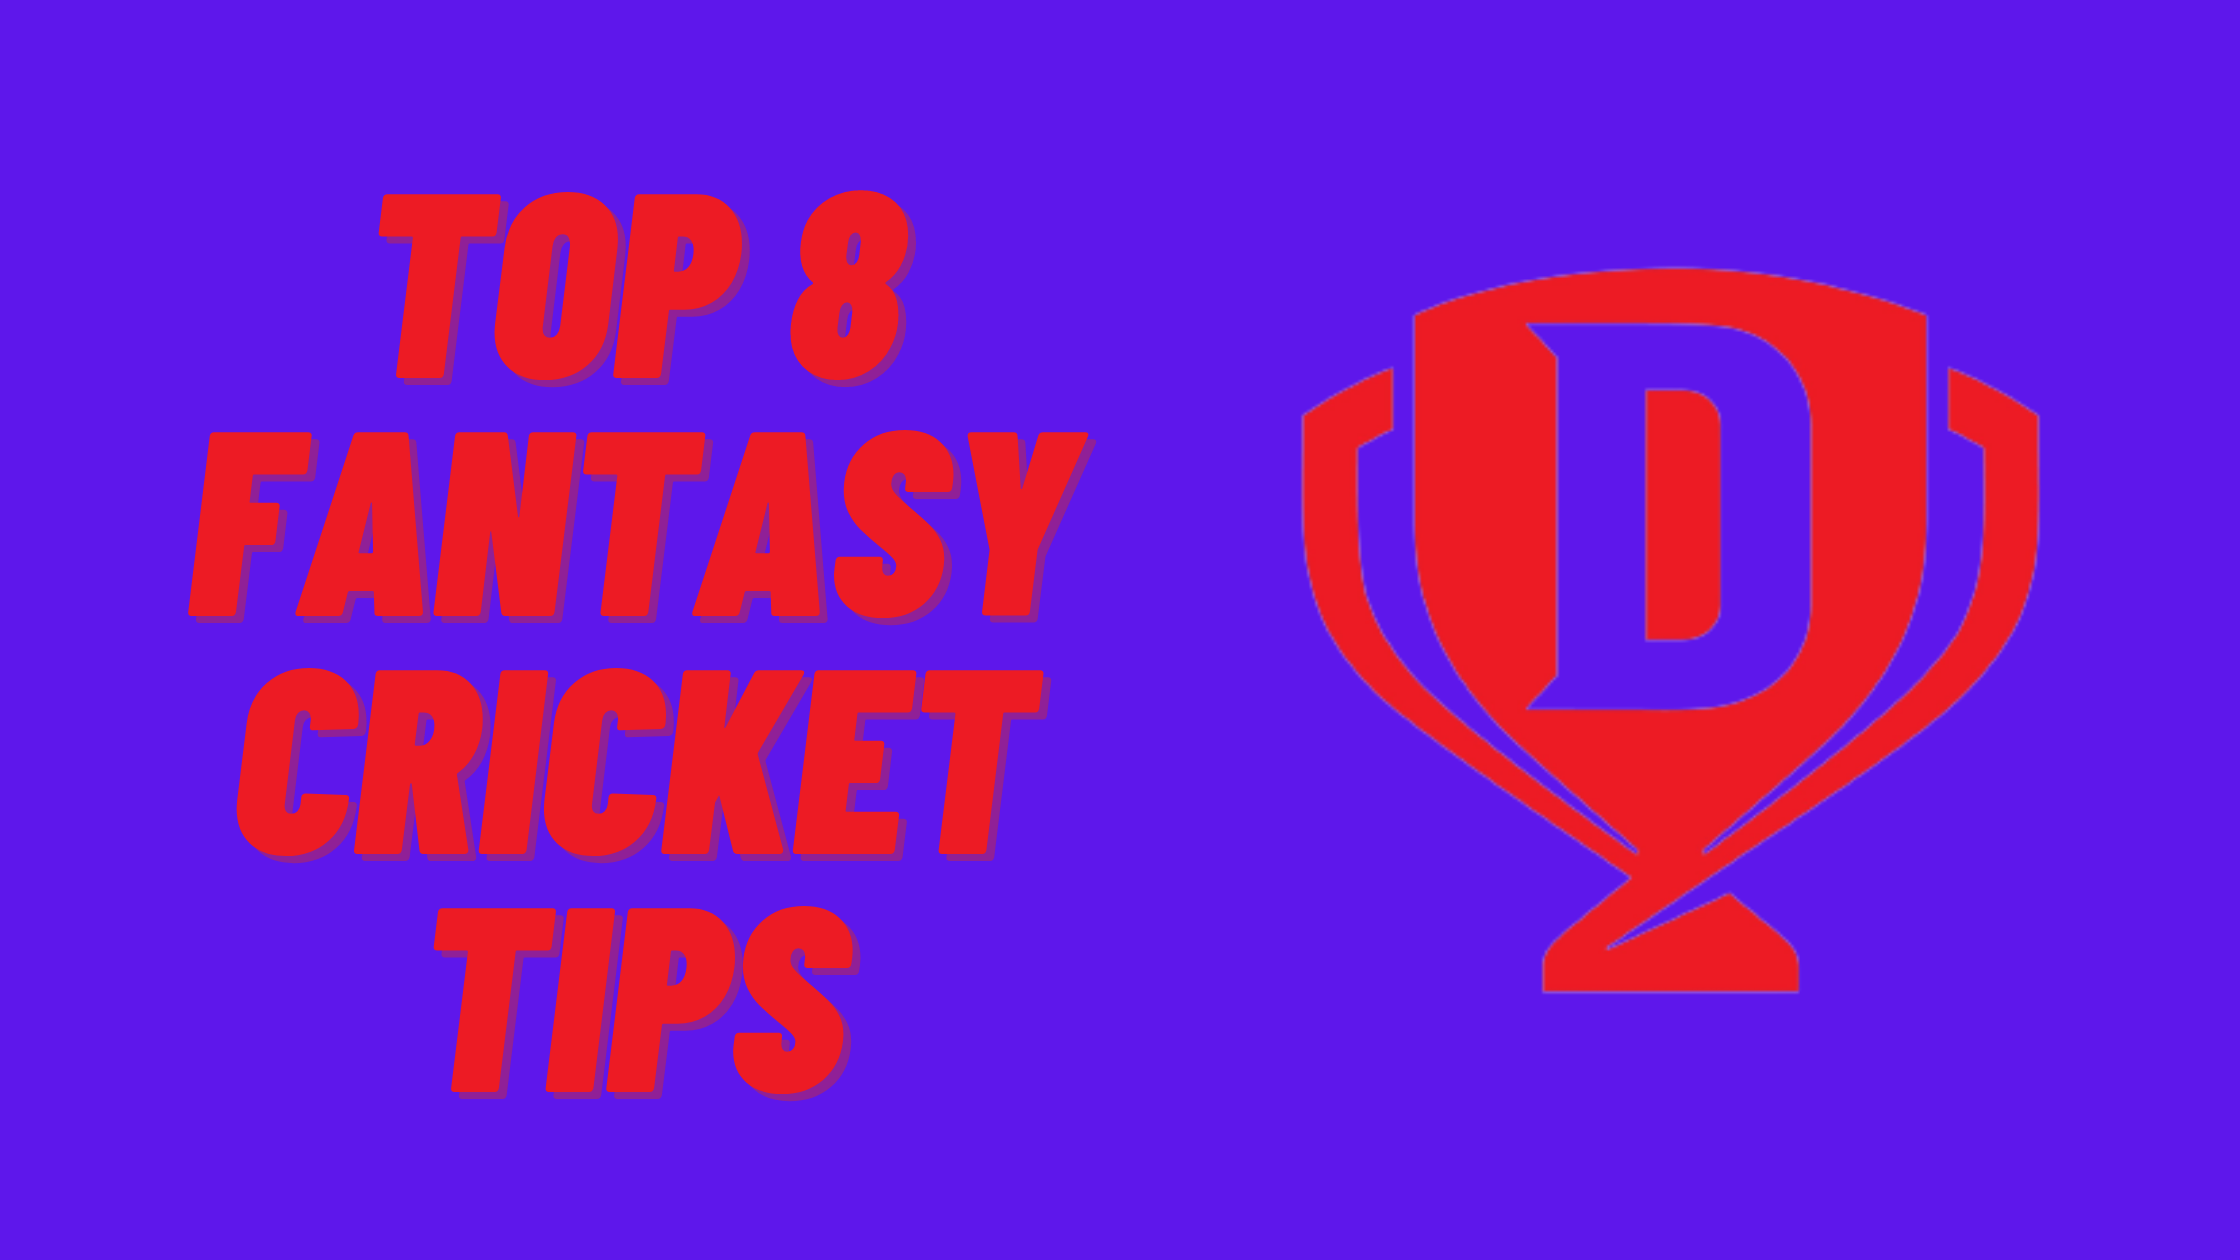 Top 8 fantasy cricket tips